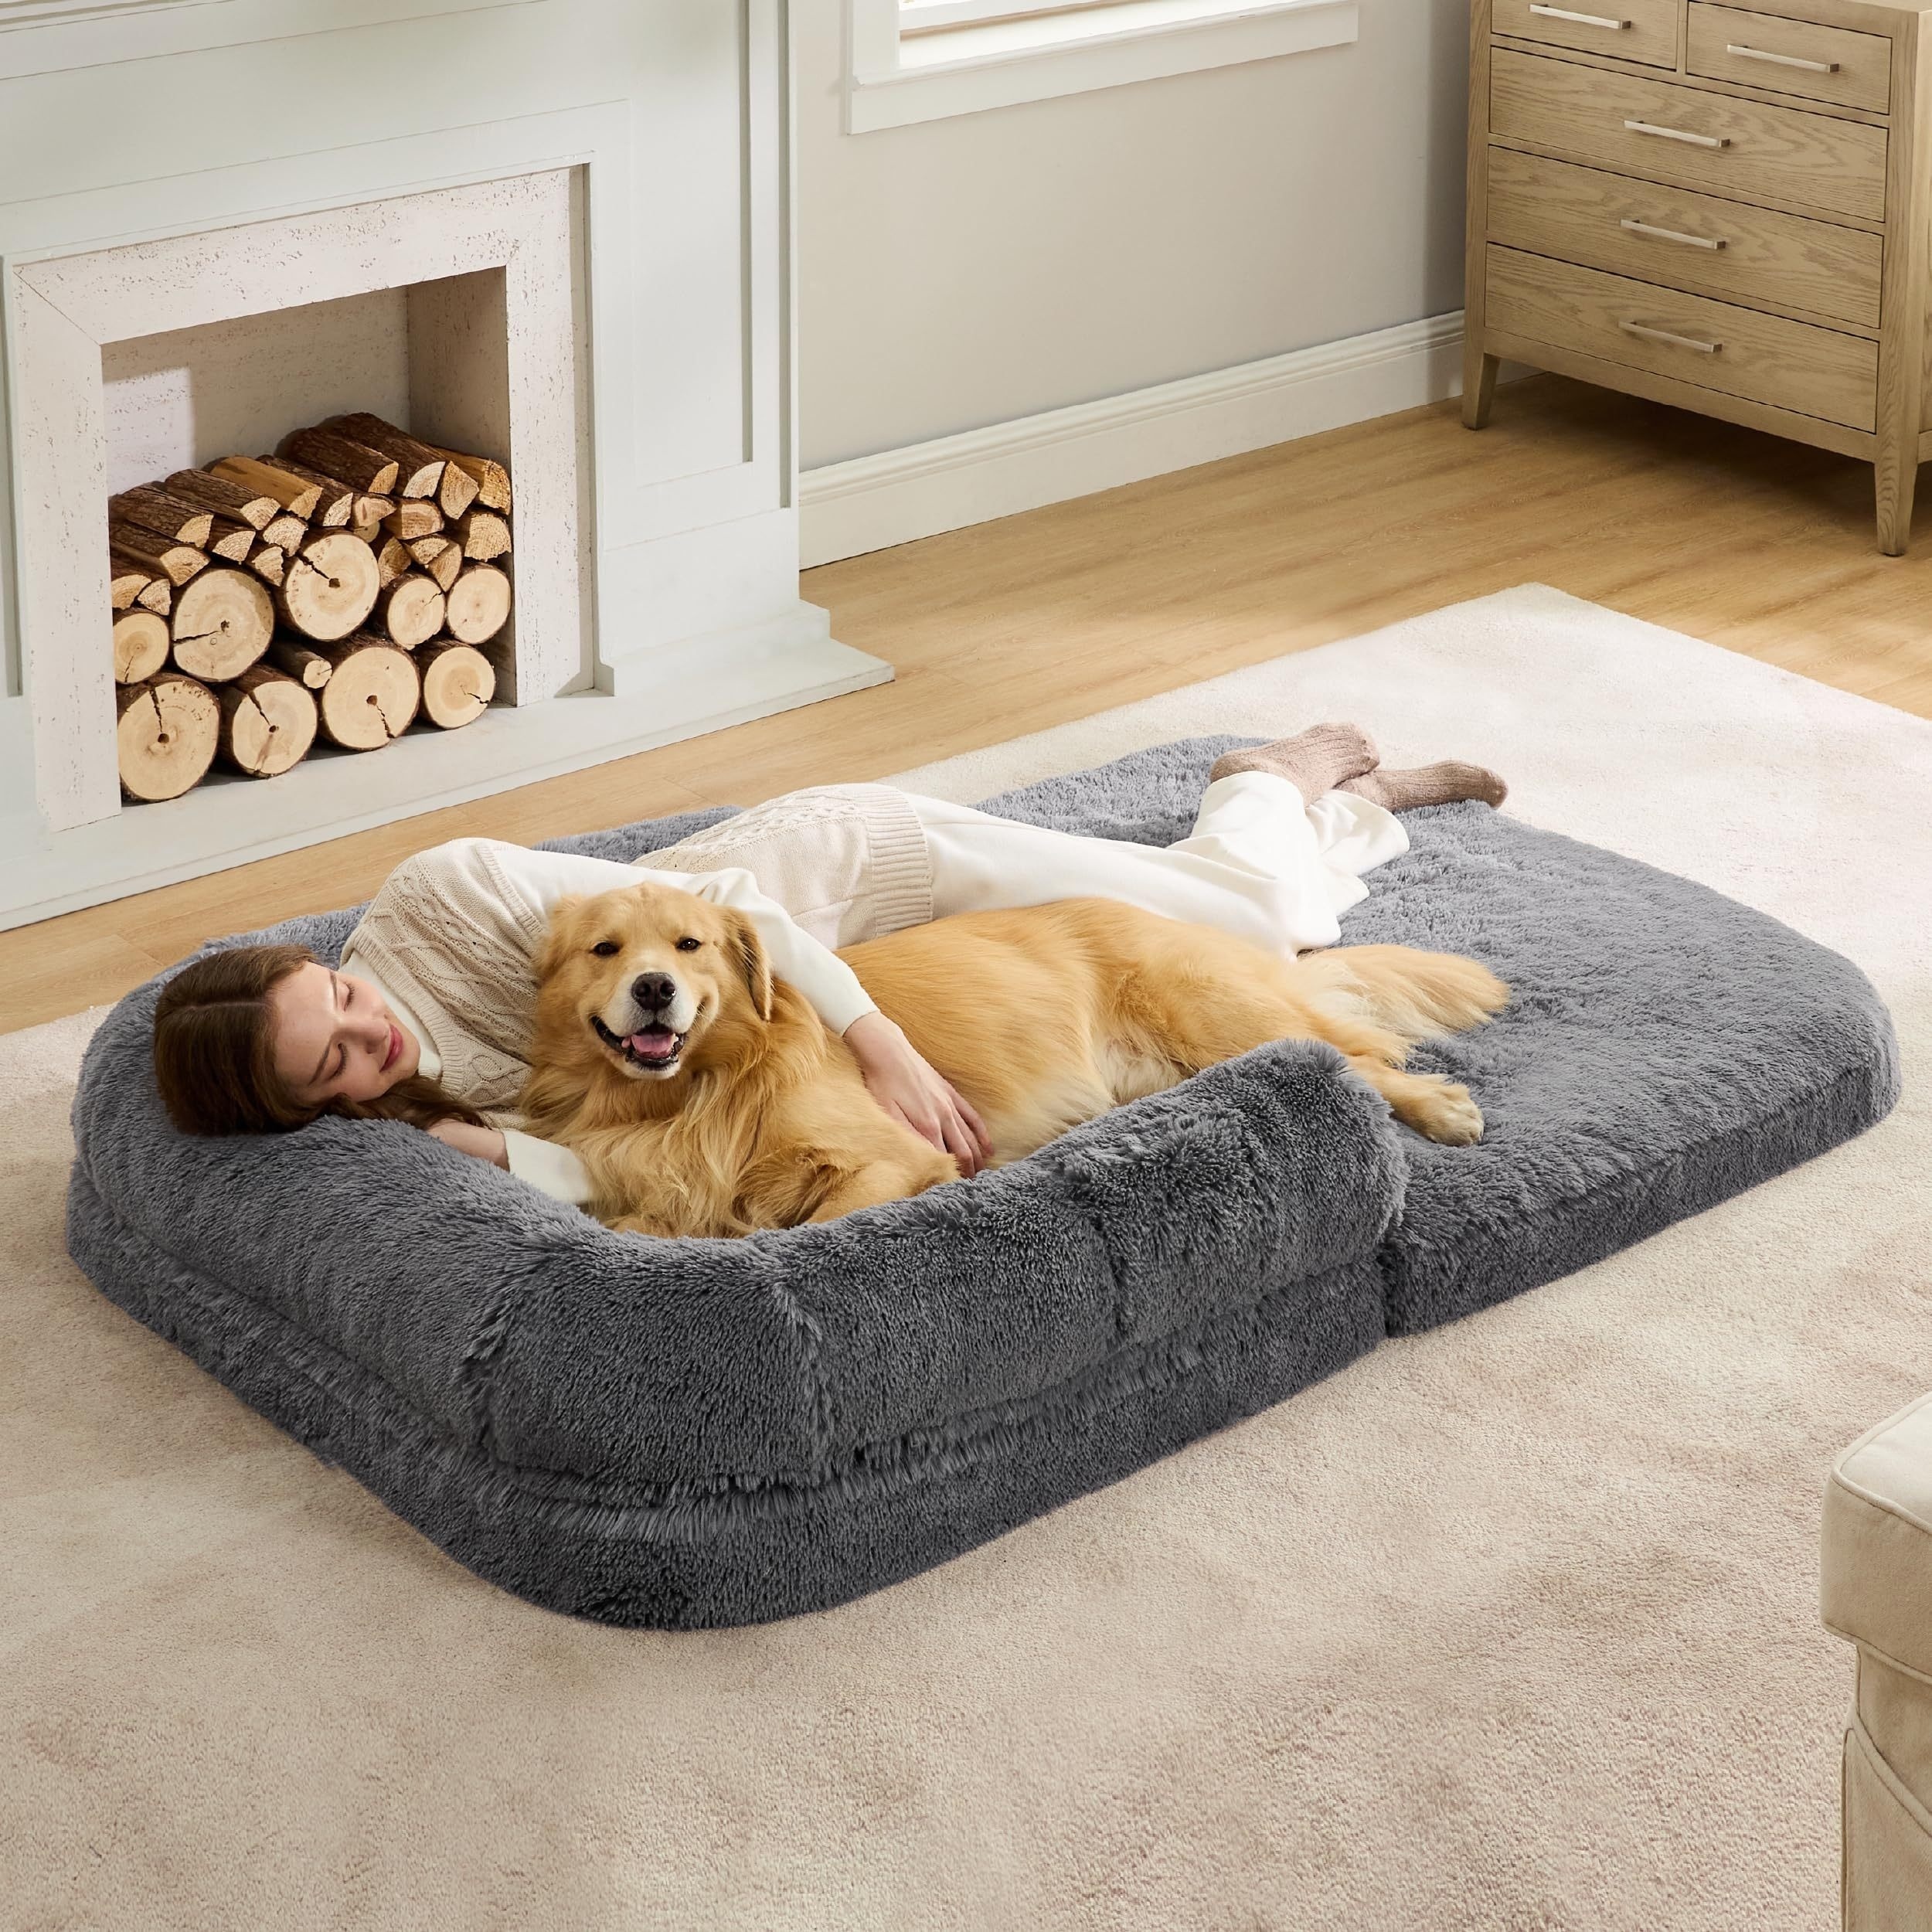 1個【柔らかい】ペットベッド 多機能 犬ベッド ふわふわ 暖かい 取外し